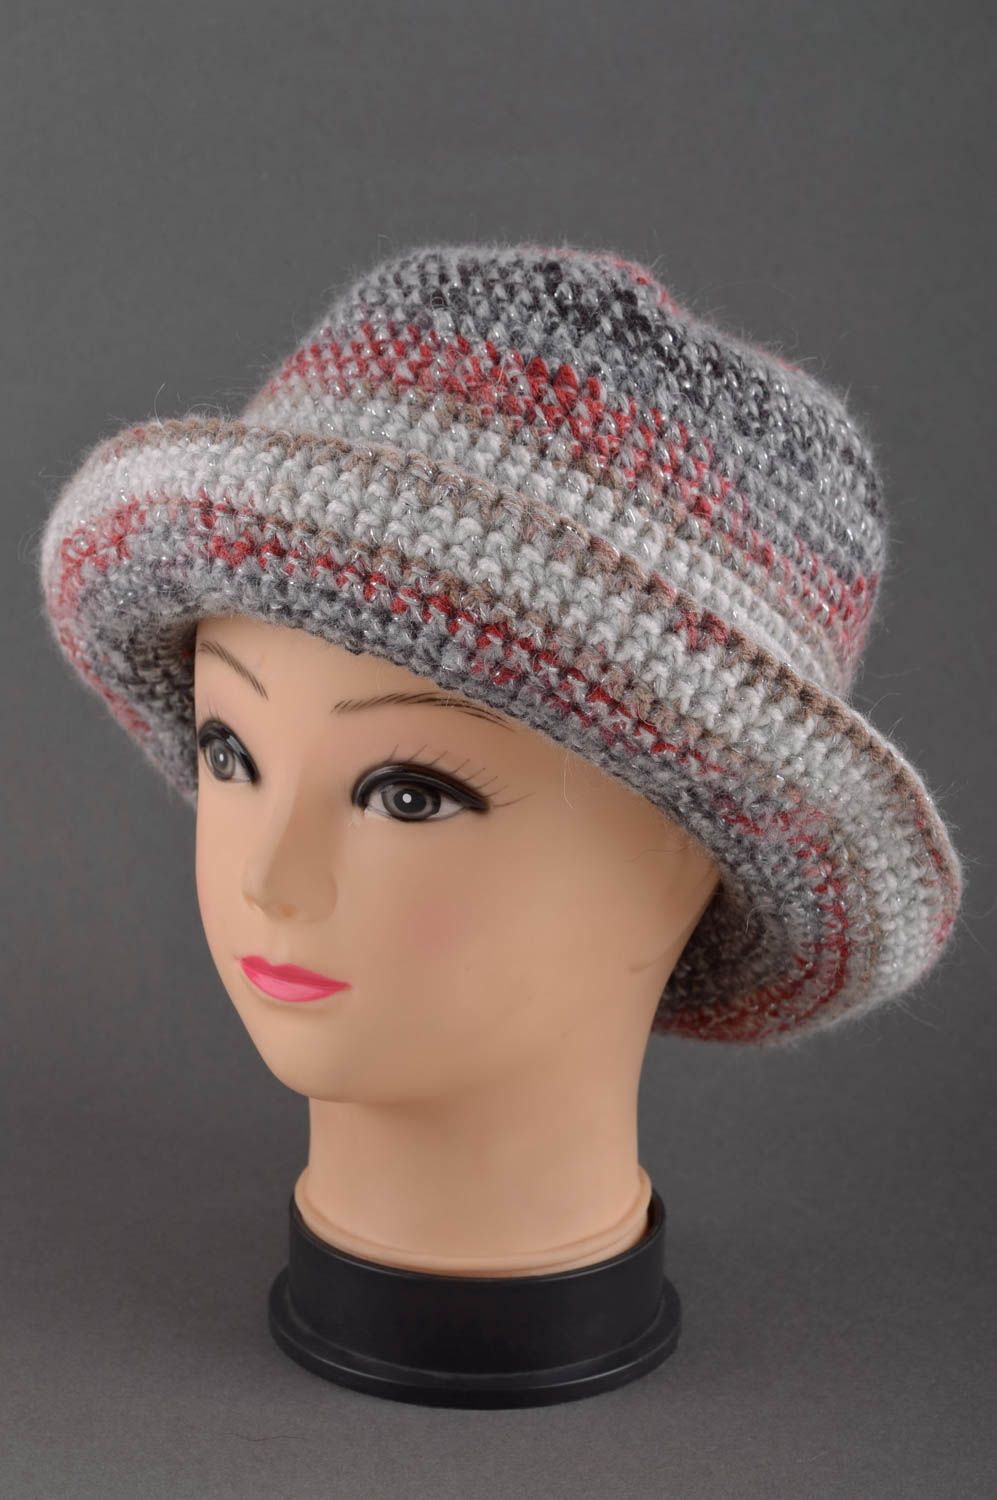 Designer hat fashion accessories for women ladies hat handmade crochet hat photo 1